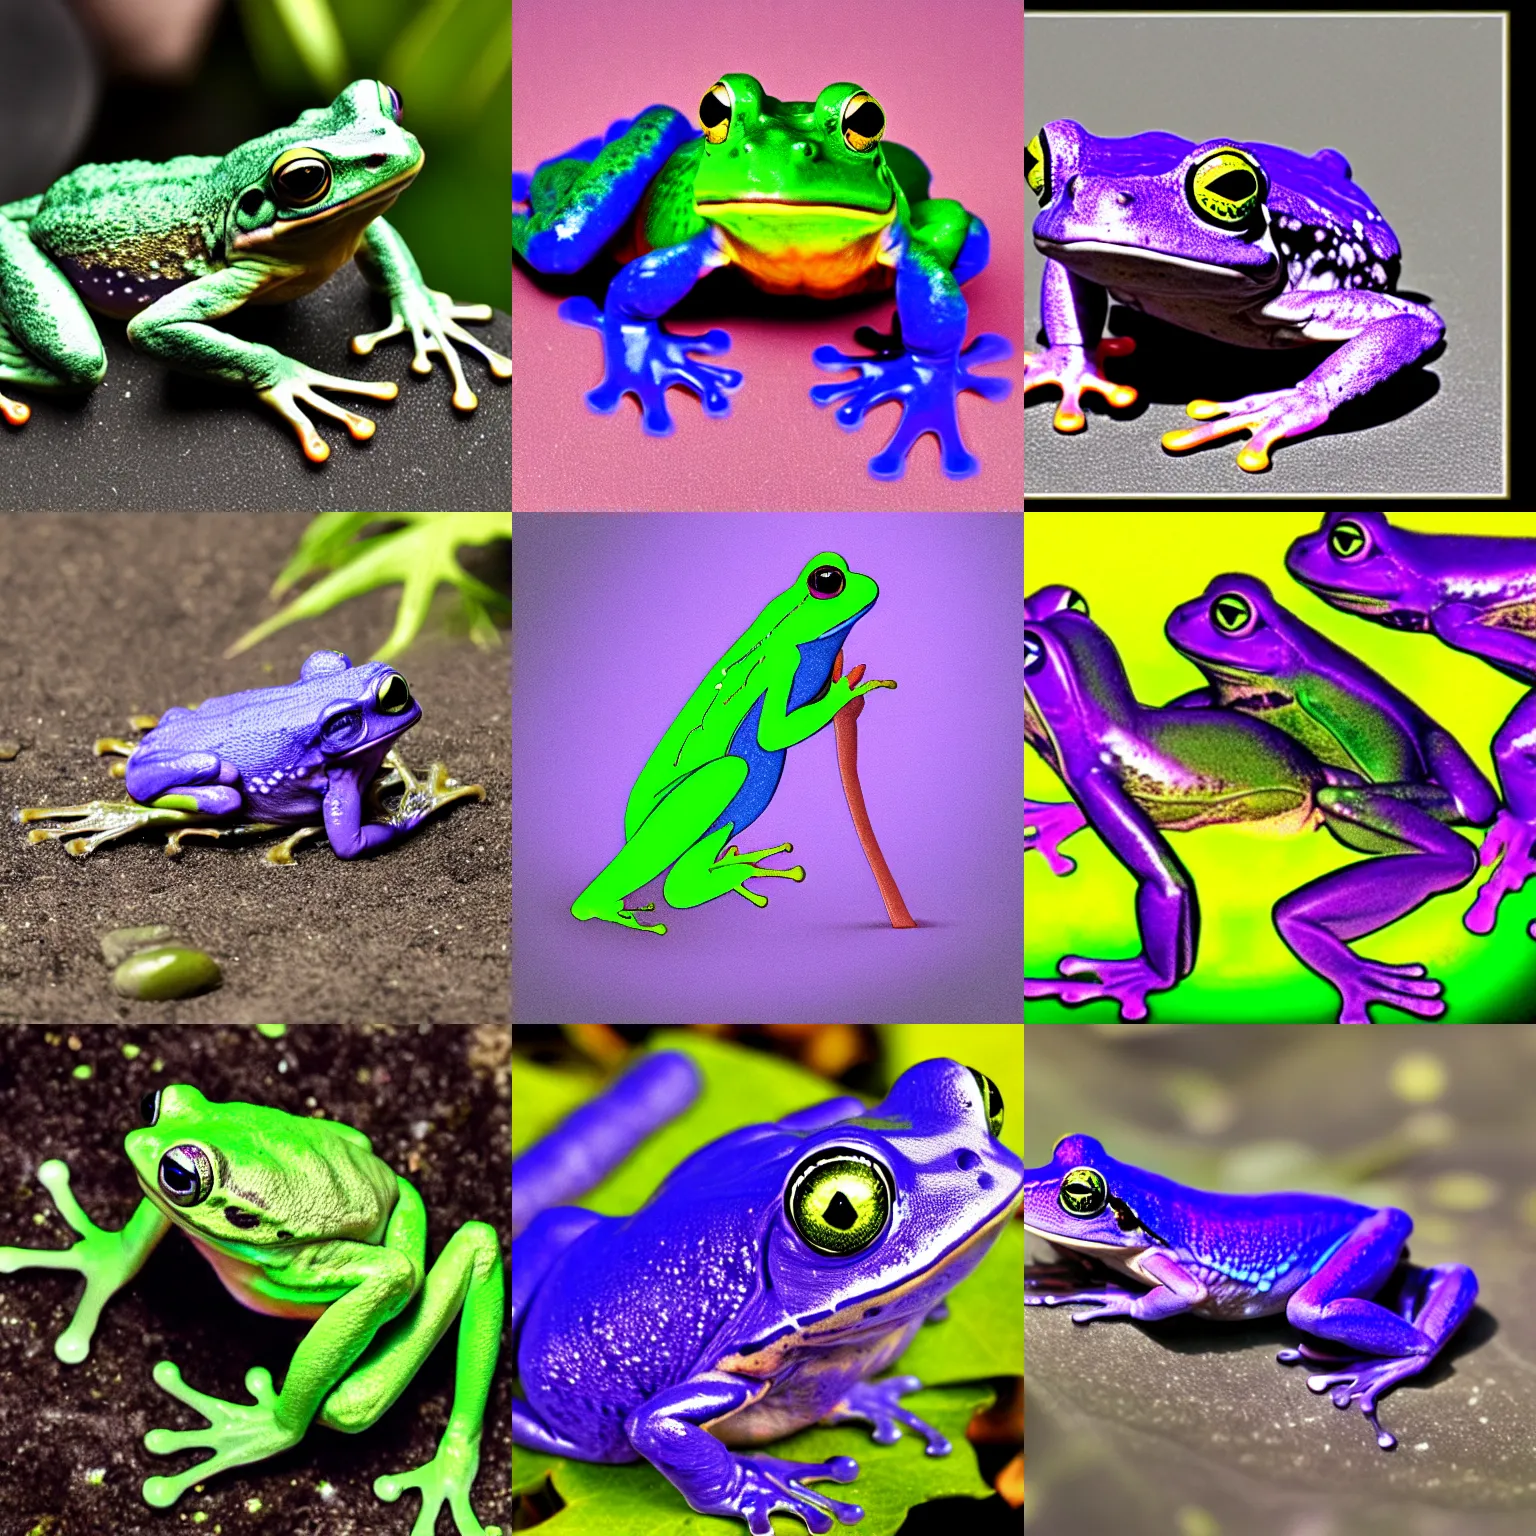 Prompt: Ultraviolet frog